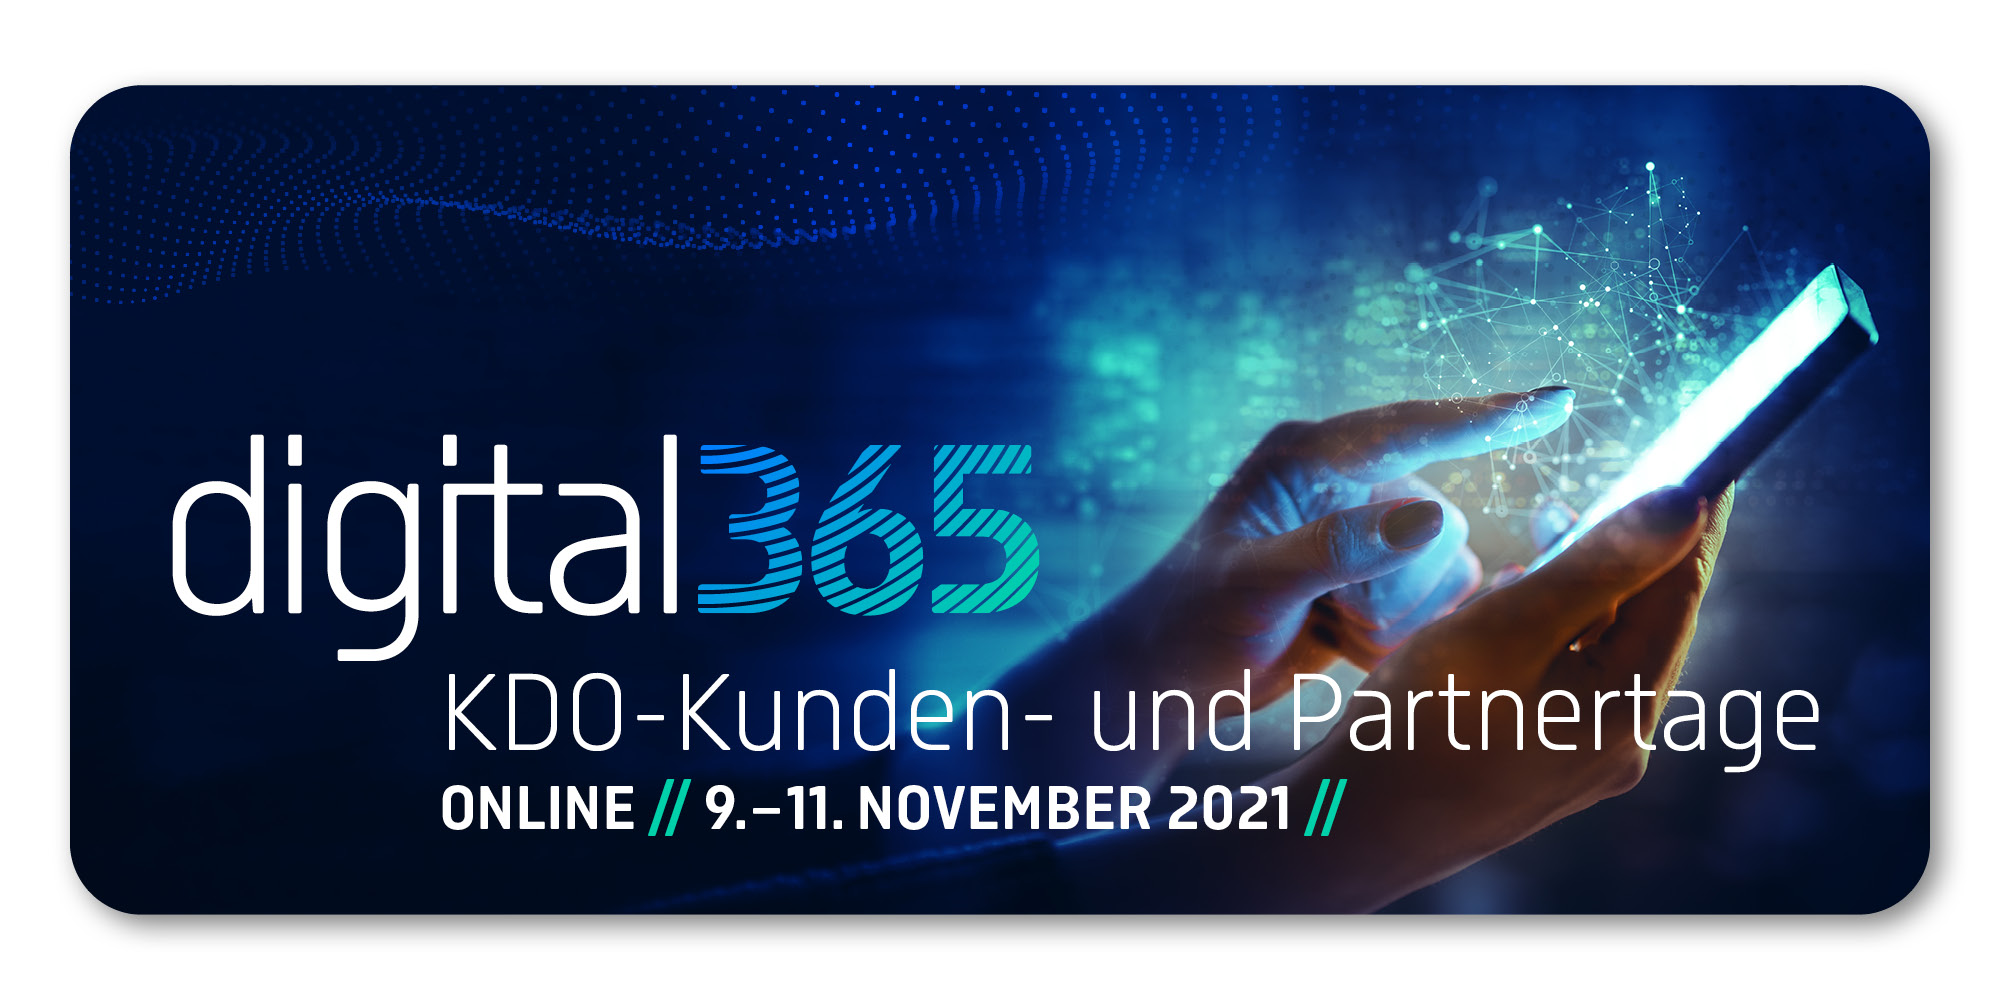 digital364 KDO-Kunden- und Partnertage 2021